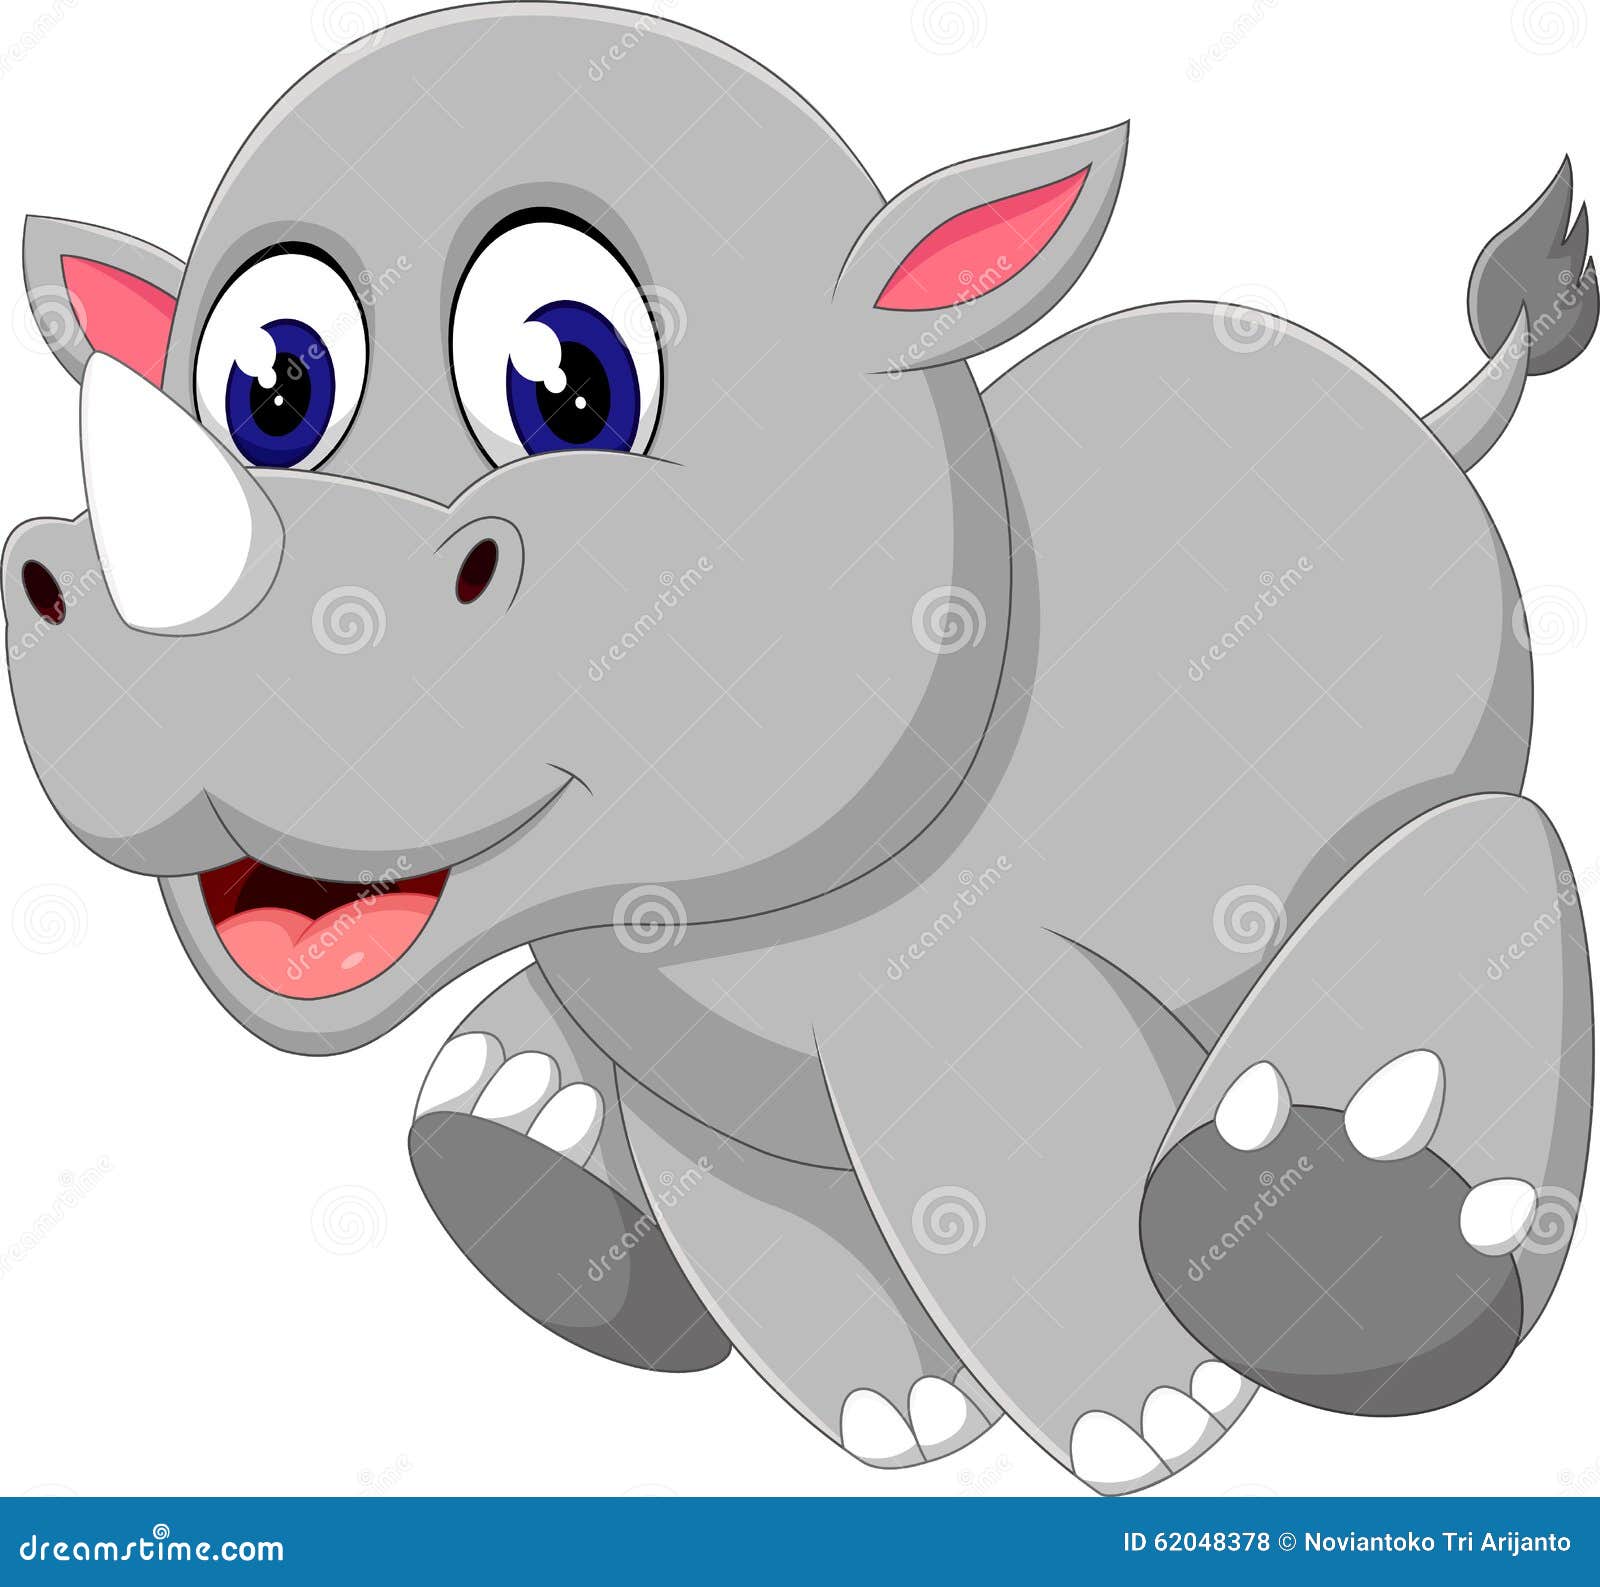 free baby rhino clipart - photo #20